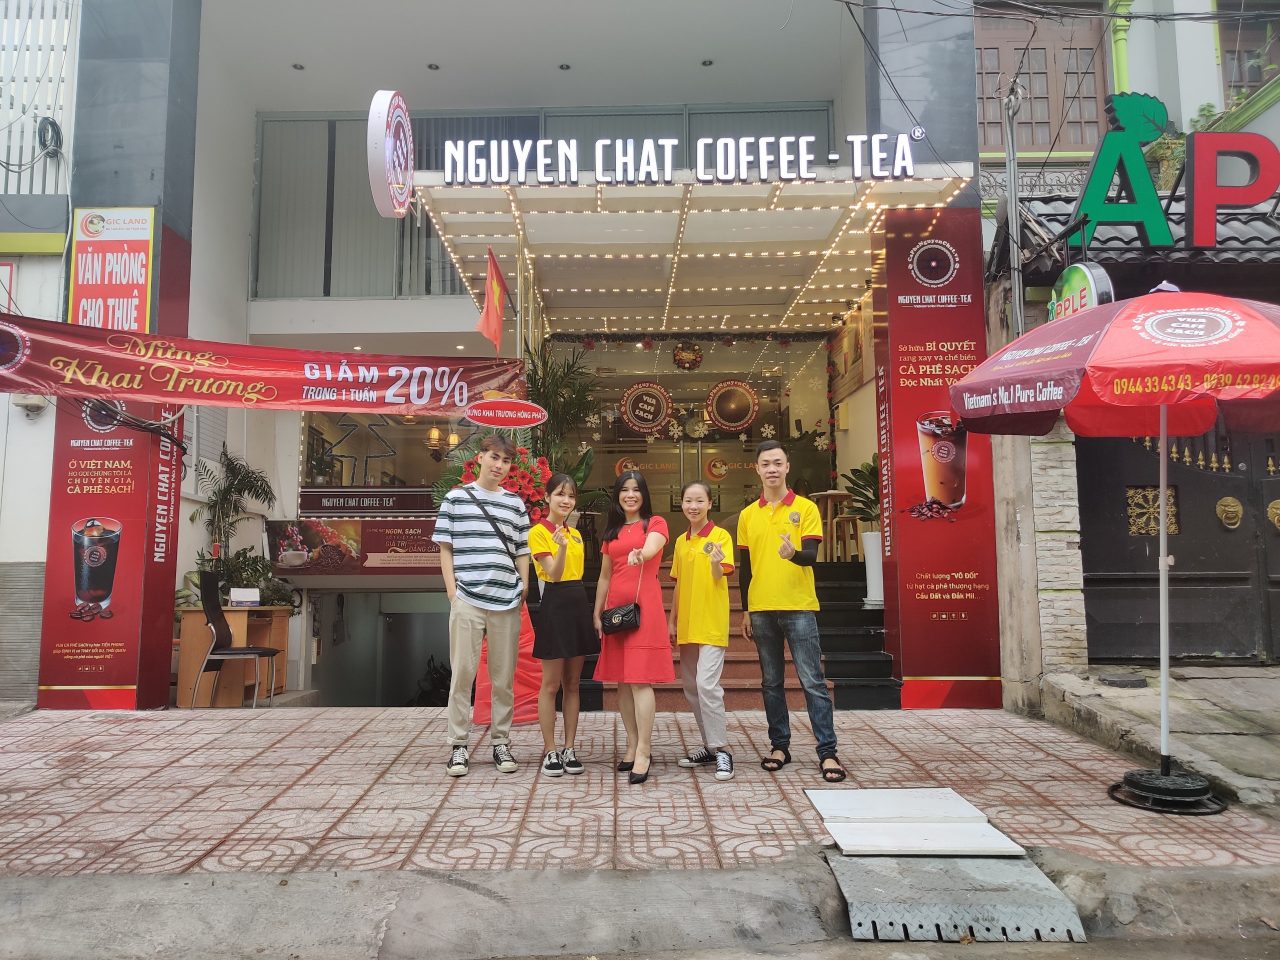 Quán Cafe nhượng quyền Chị Hương Bình Thạnh - Cà phê nguyên chất